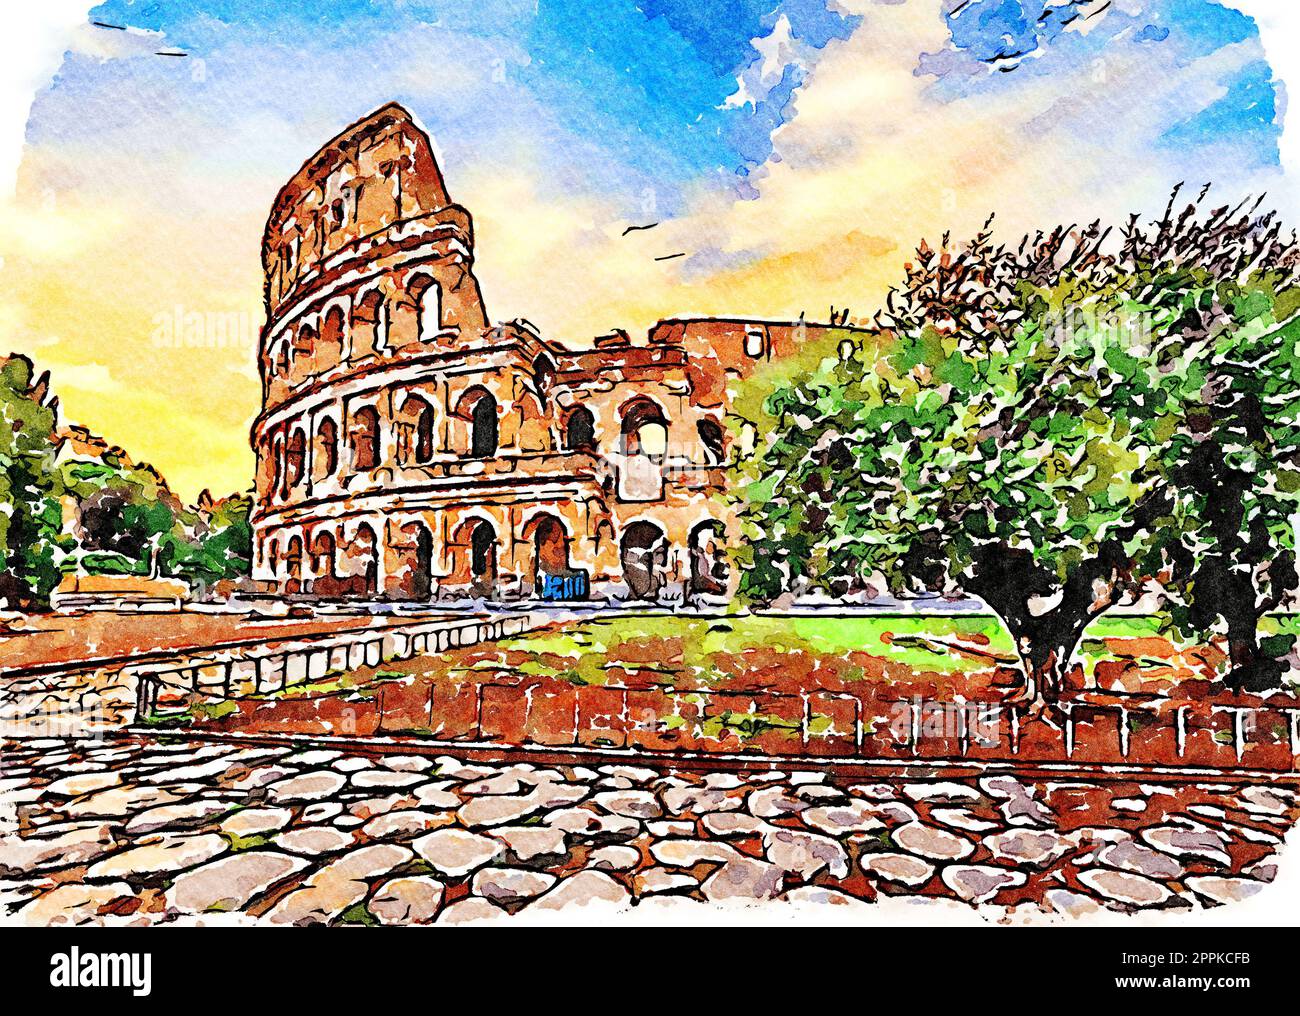 Rome, Italie - coucher de soleil derrière le Colisée - Illustration créative, aquarelle vintage. Banque D'Images